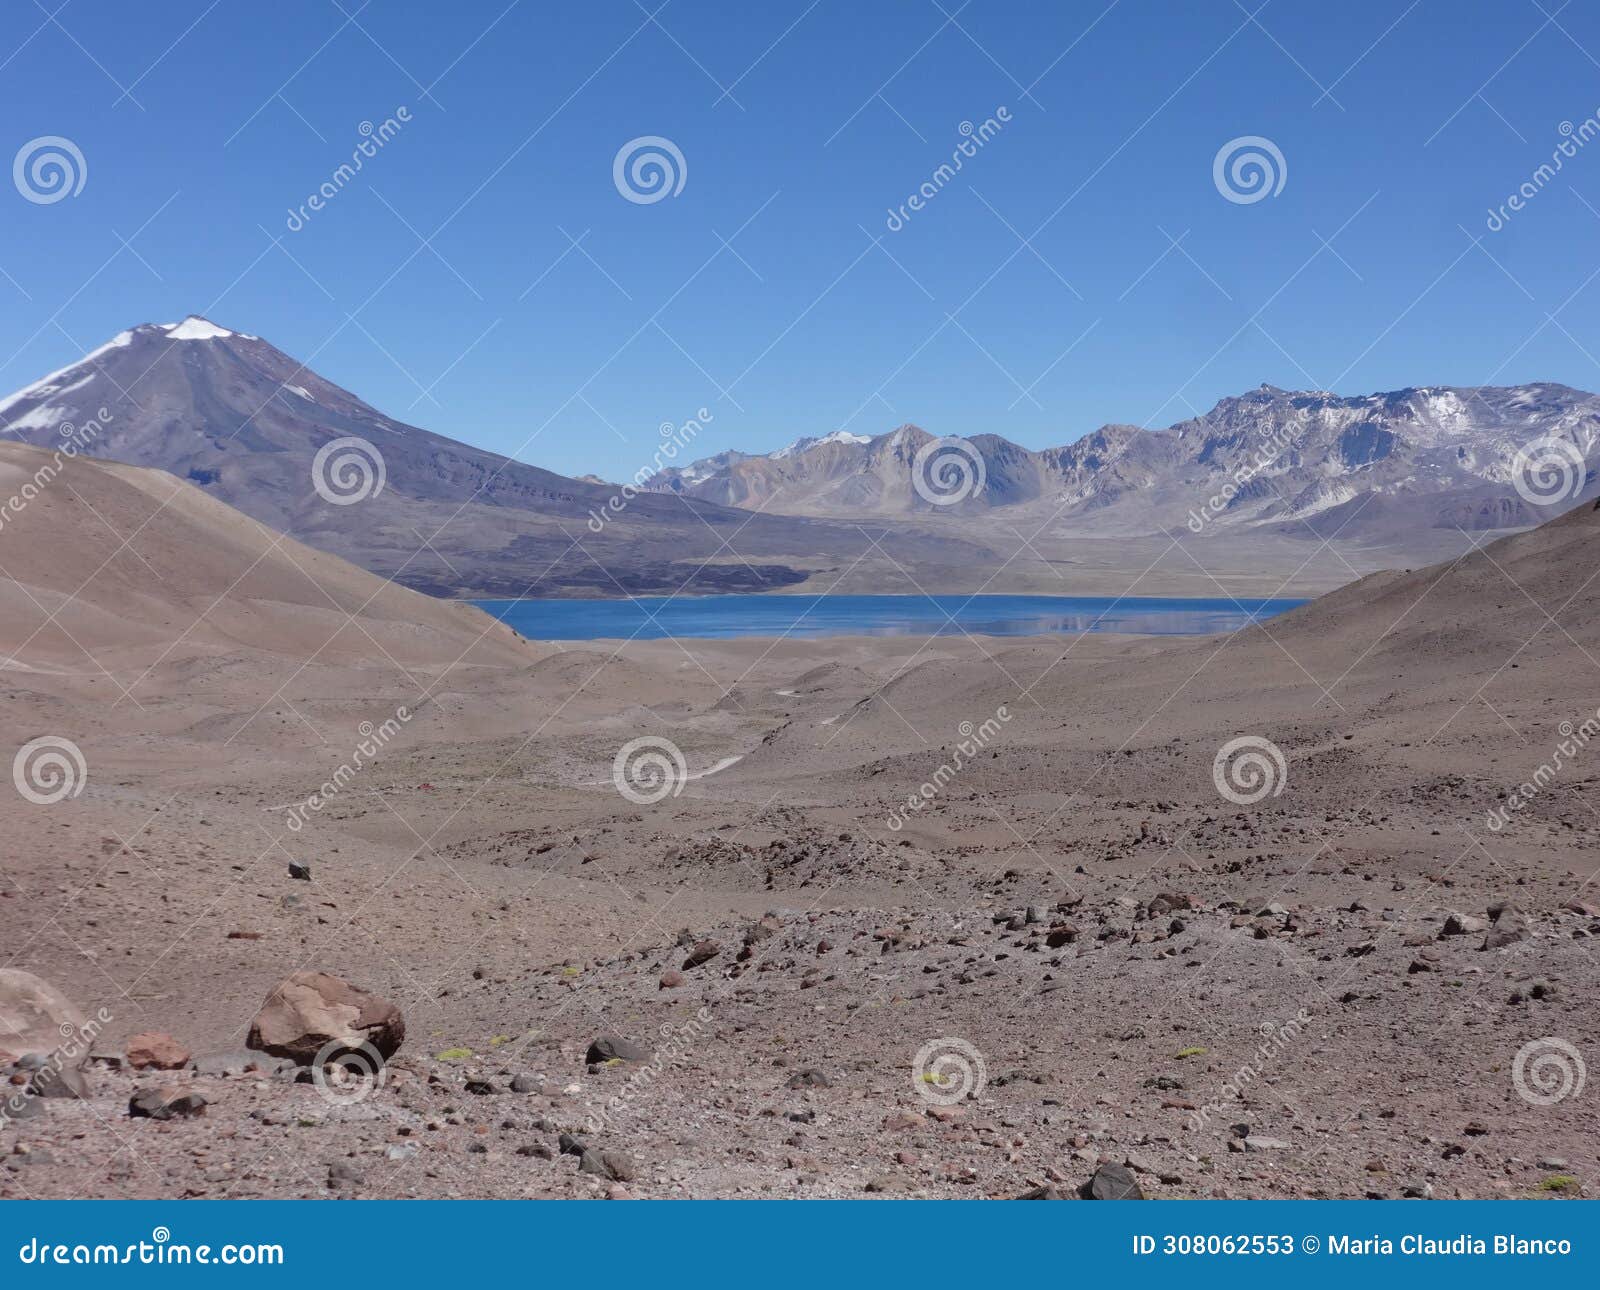 diamante lagoon with maipo volcano in mendoza. argentina